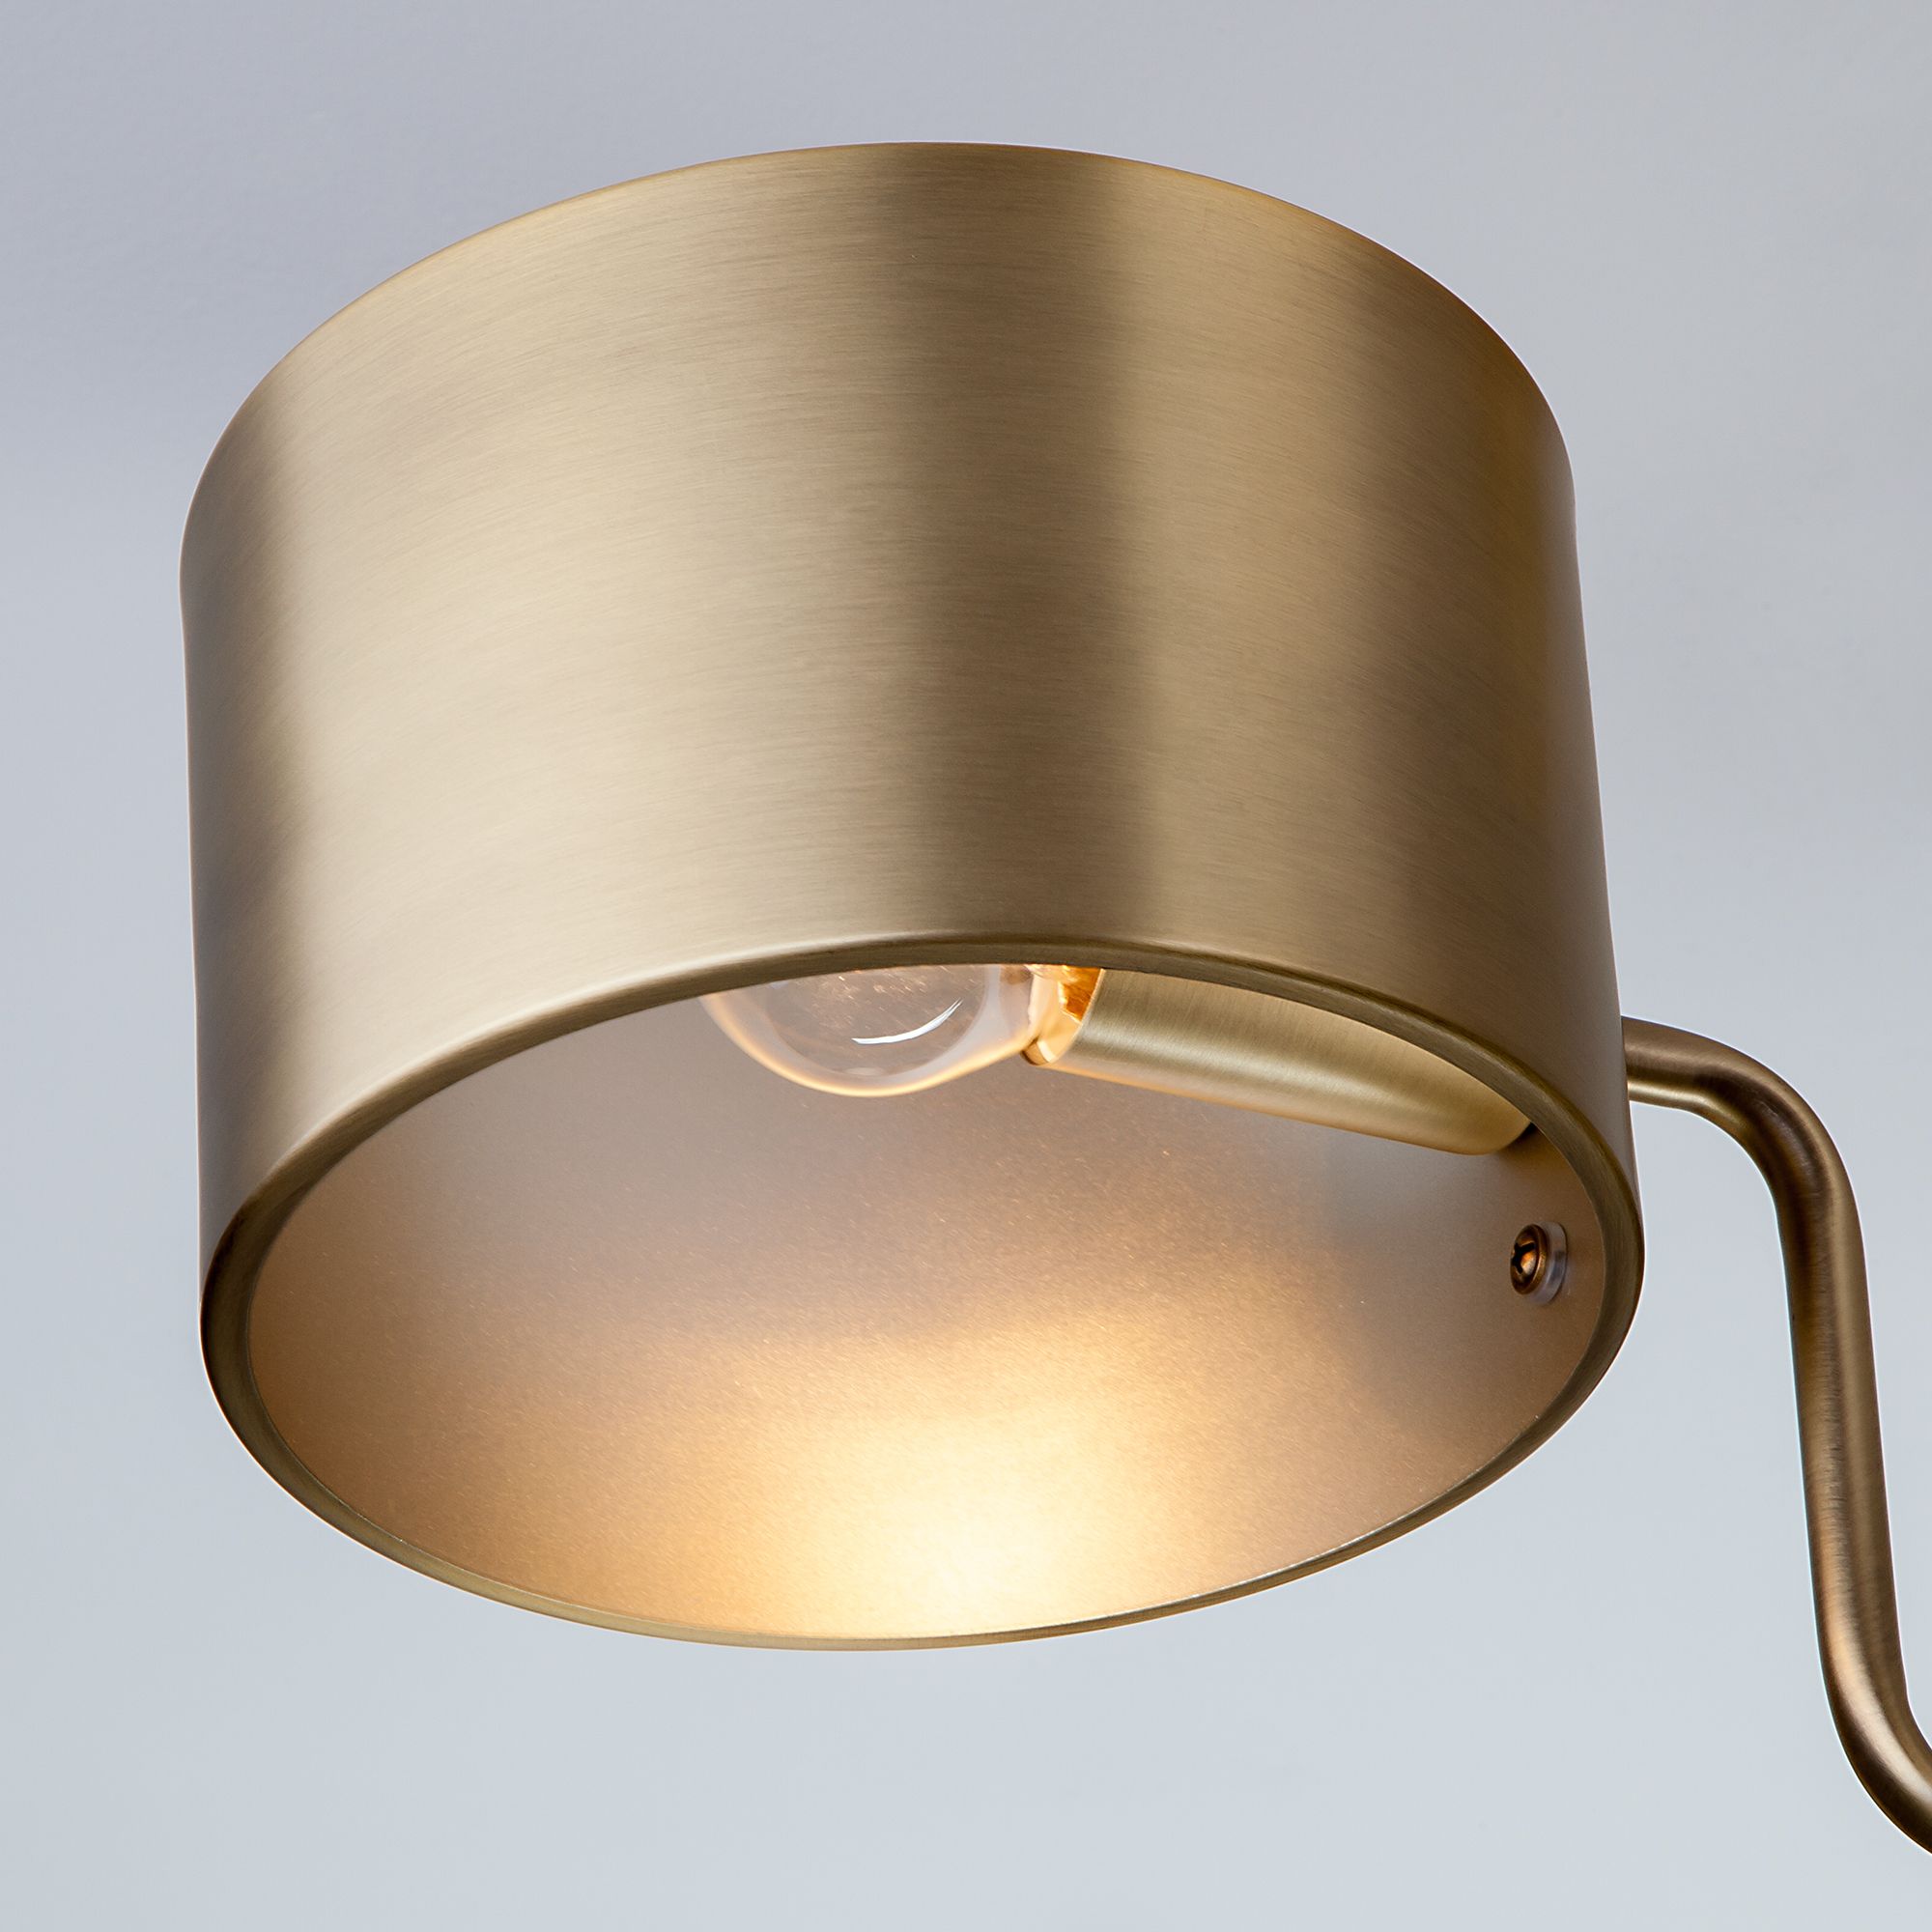 Подвесной светильник в стиле лофт Bogate's Pallada 293/6  античная бронза. Фото 2